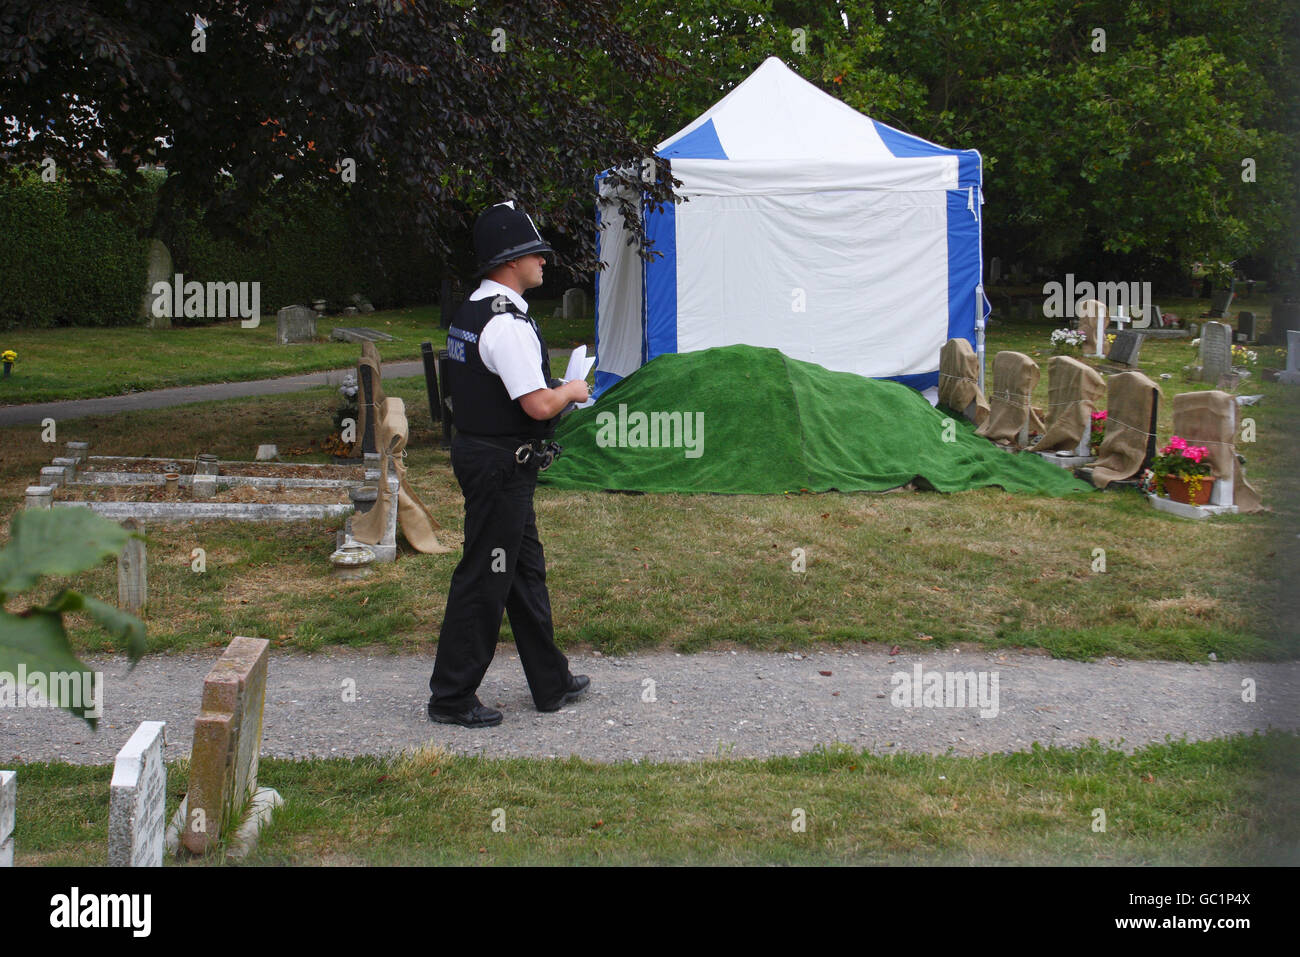 La polizia dell'Hampshire si trova in una tomba nel cimitero di Kingston a Portsmouth, dove il corpo di un uomo è stato esumato durante la notte in relazione all'assassinio di Teresa De Simone nel 1979. PREMERE ASSOCIAZIONE foto. Data immagine: Mercoledì 12 agosto 2009. Il sospetto è stato identificato dopo che il caso è stato riaperto dopo che le prove del DNA hanno dimostrato che l'uomo incarcerato per 27 anni per il crimine, Sean Hodgson, era innocente. Vedere la storia della polizia di PA Desimone. Il credito fotografico dovrebbe essere: Chris Ion/PA Wire Foto Stock